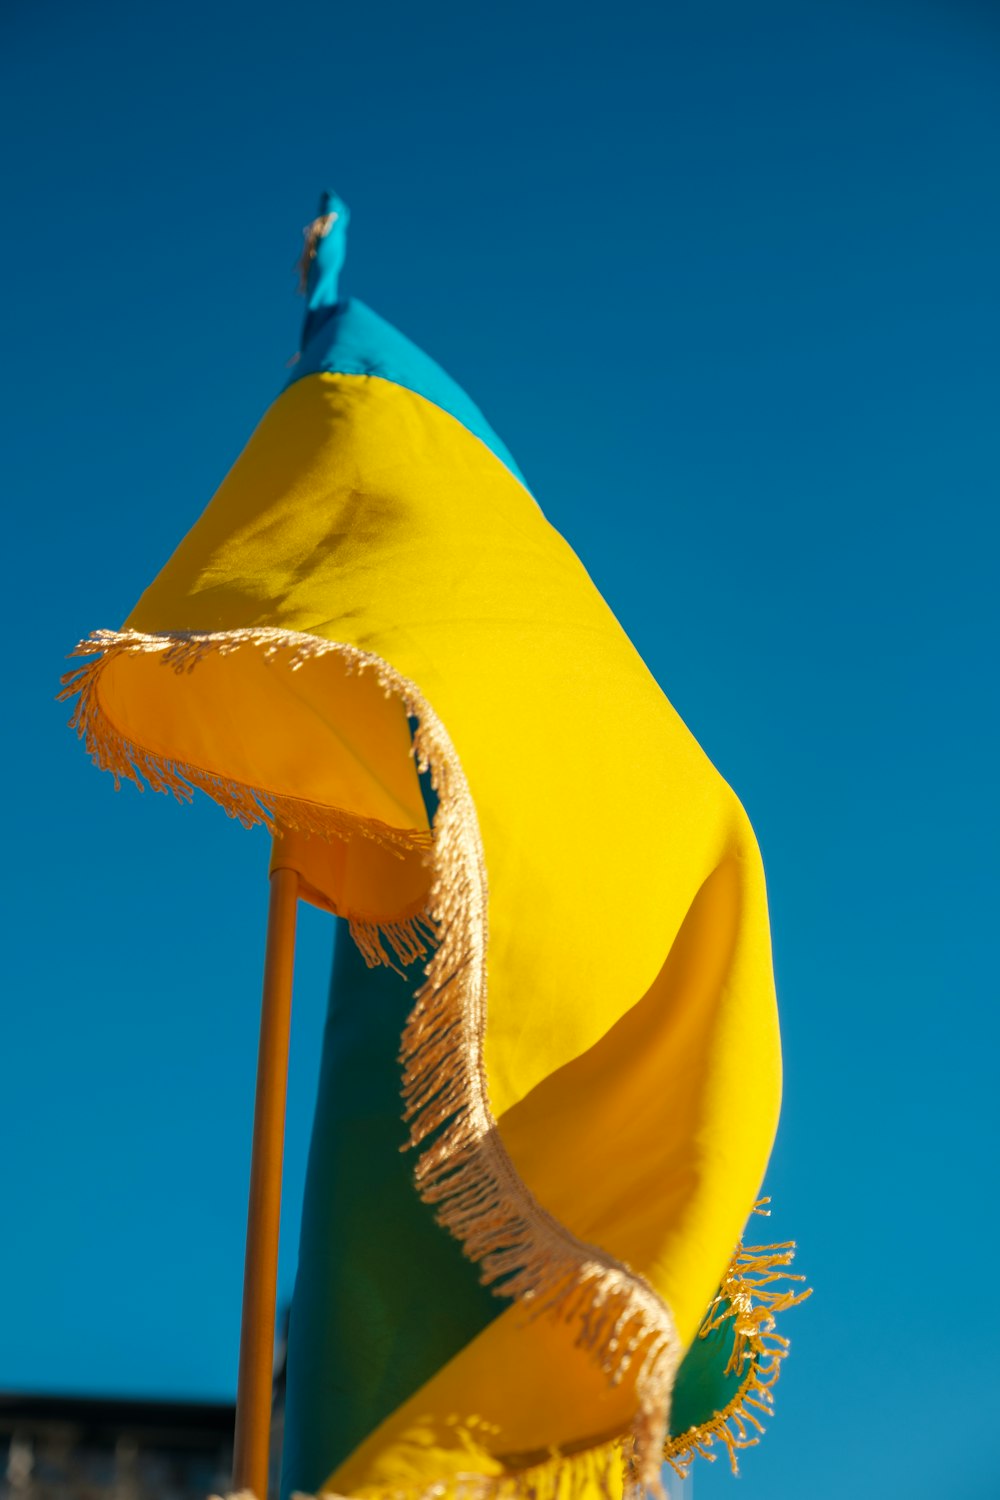 um guarda-chuva amarelo e verde com um céu azul no fundo